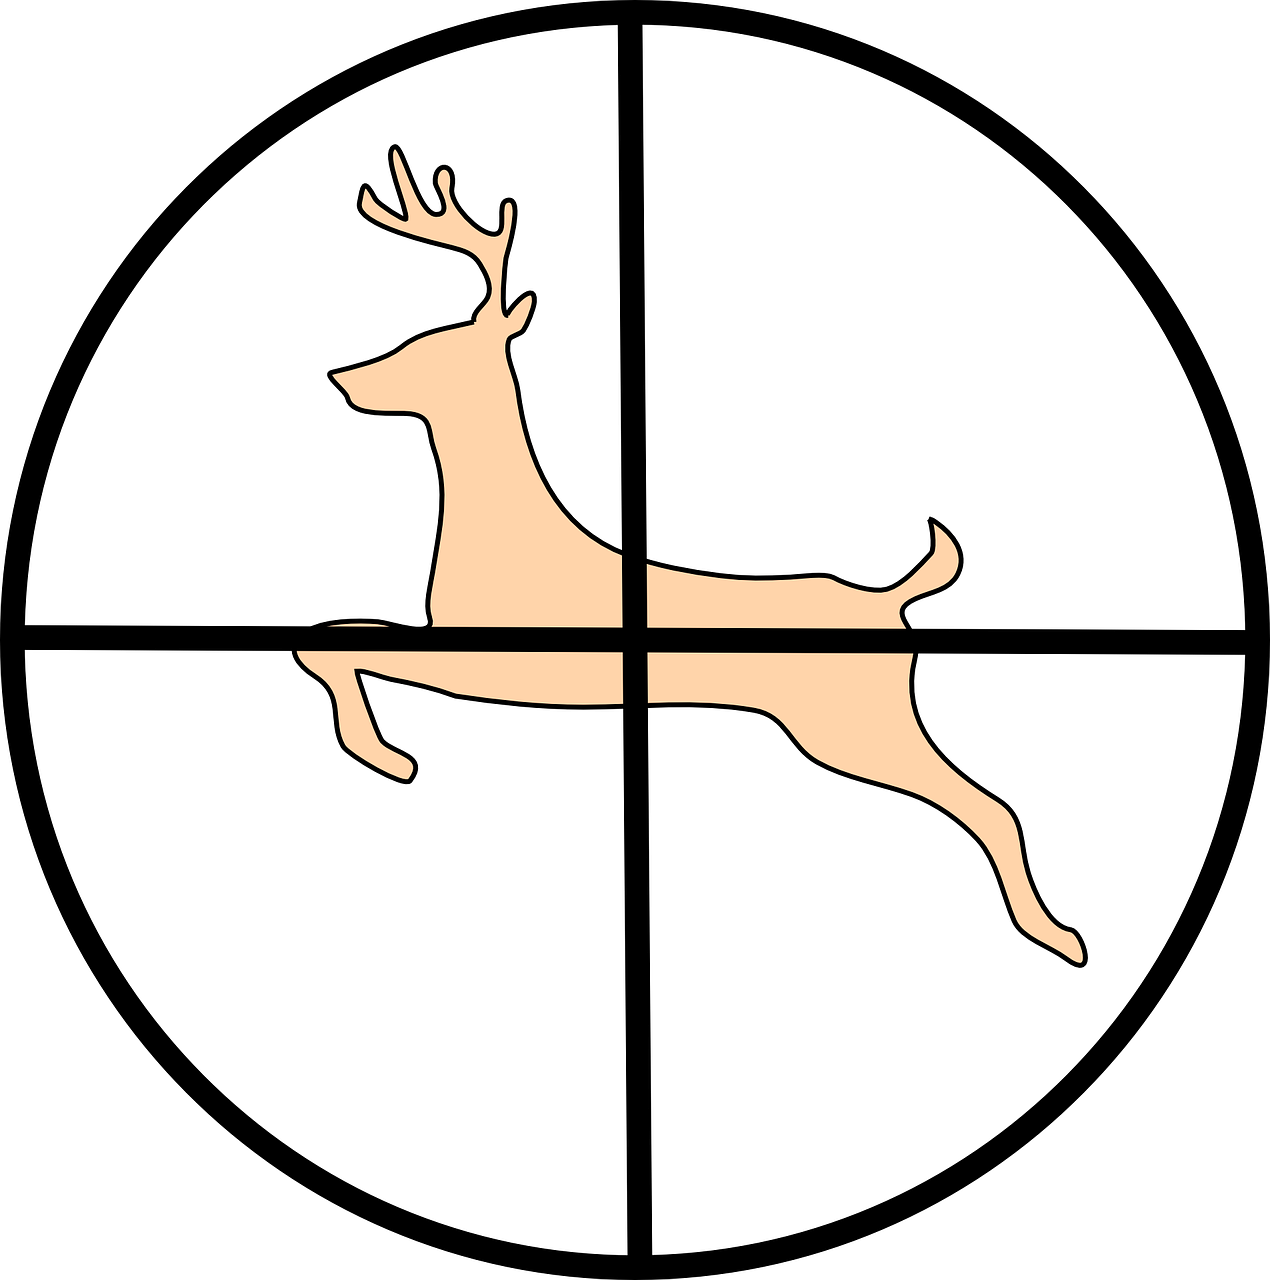 crosshair hunting deer free photo